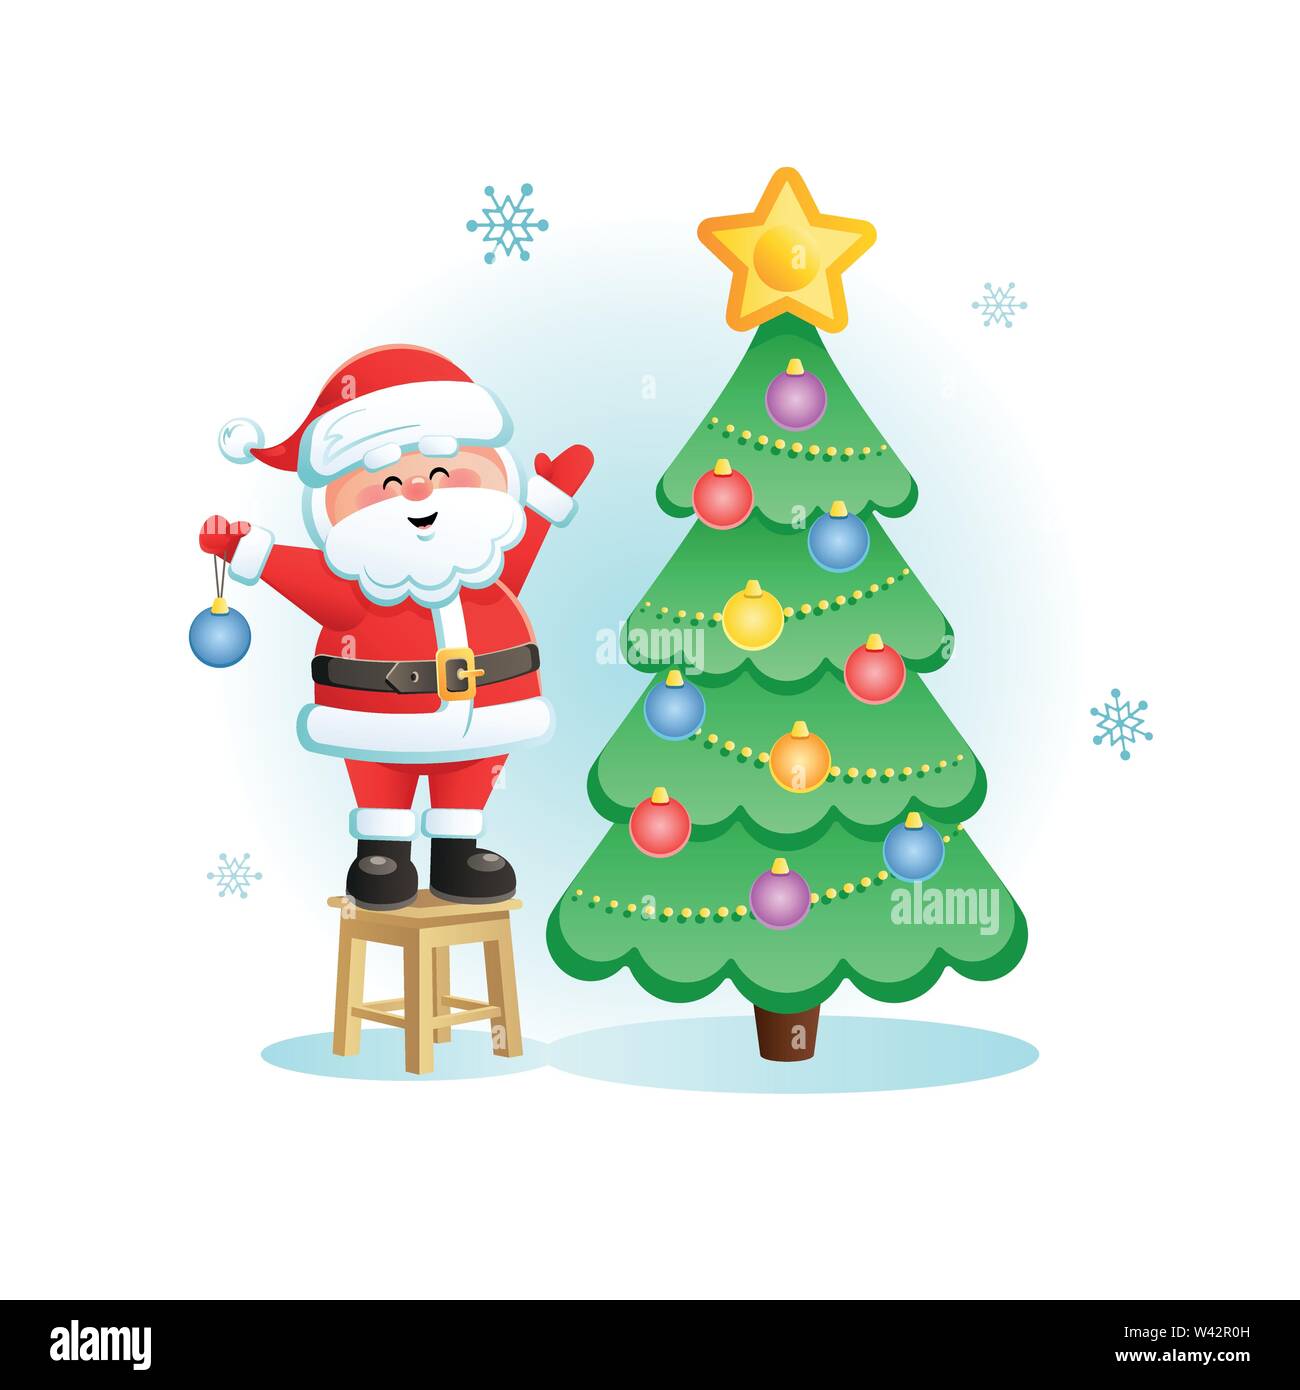 Frohe Weihnachtsmann mit Weihnachtsbaum. Süße Weihnachten cartoon Charakter. Vector Illustration ohne transparente Objekte. Stock Vektor